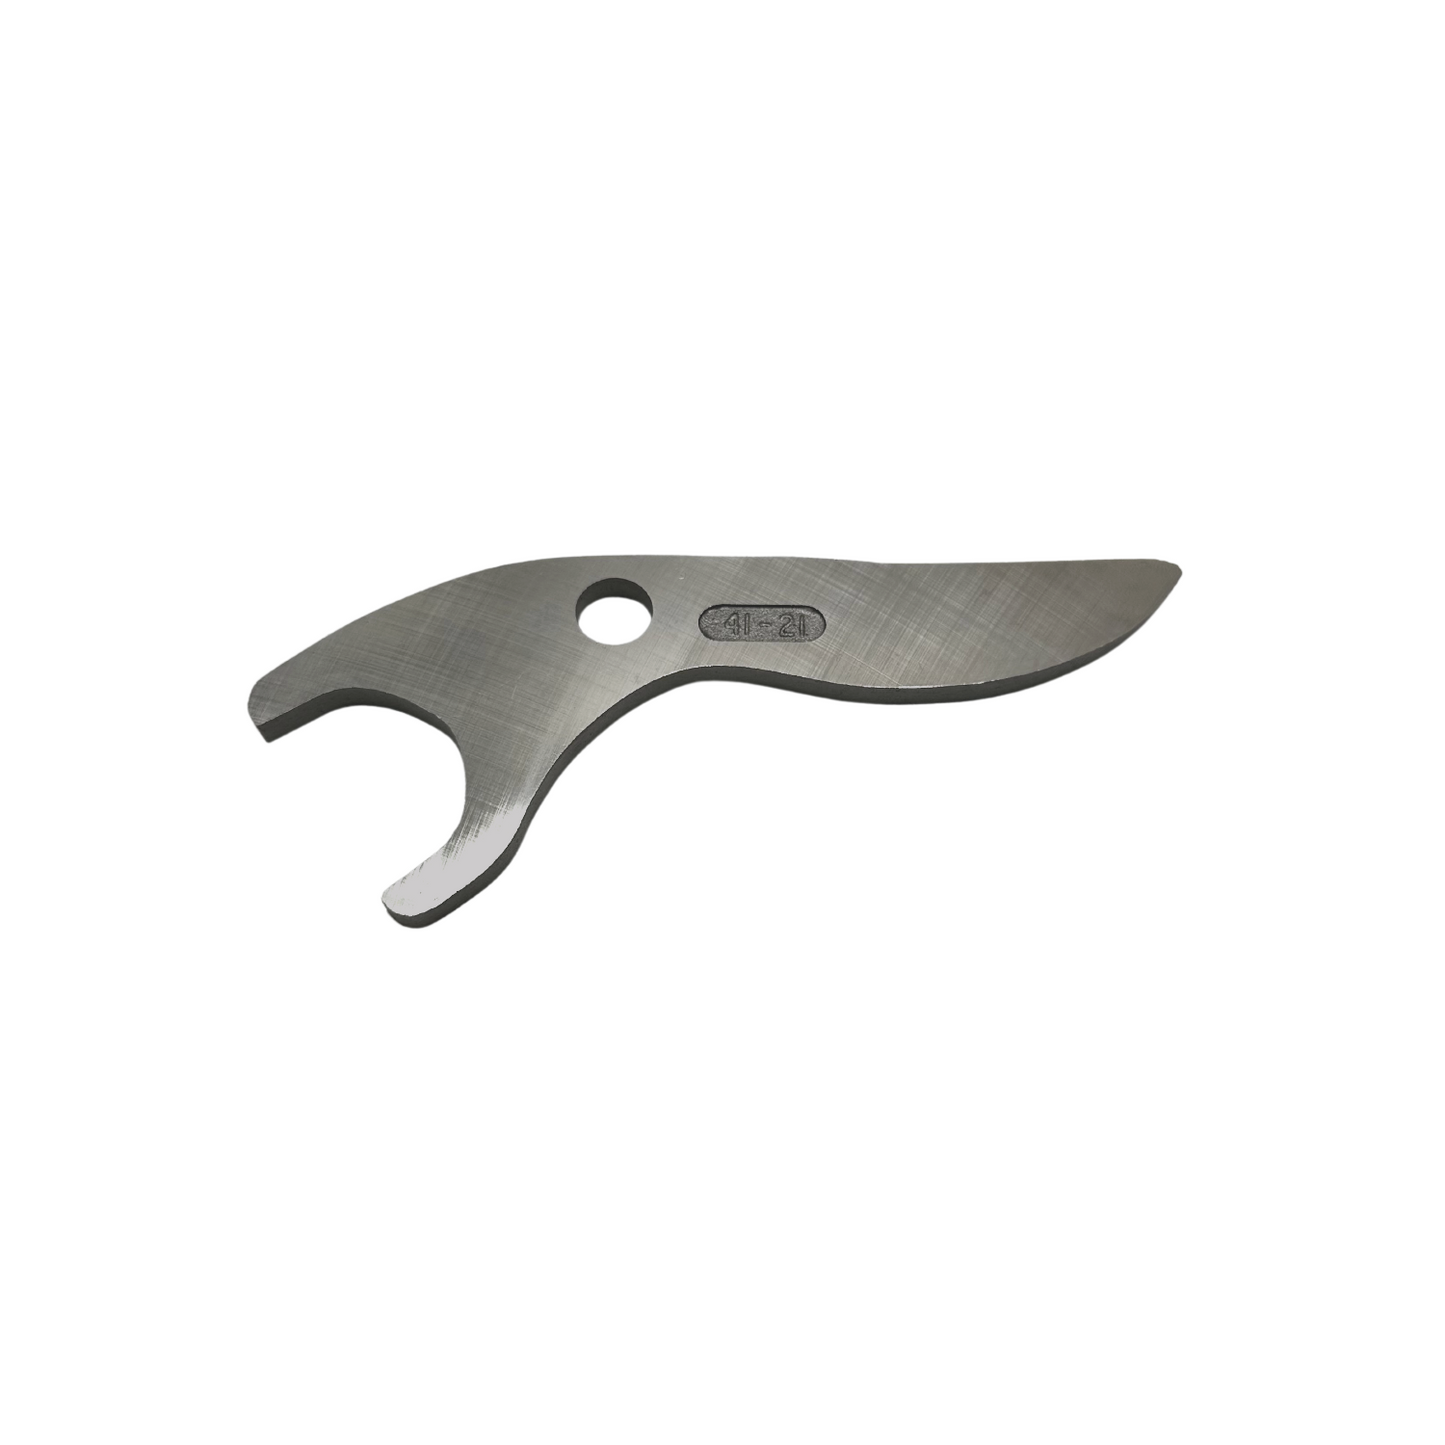 41-21 - 24 Gauge Scissor Shear Center Blade